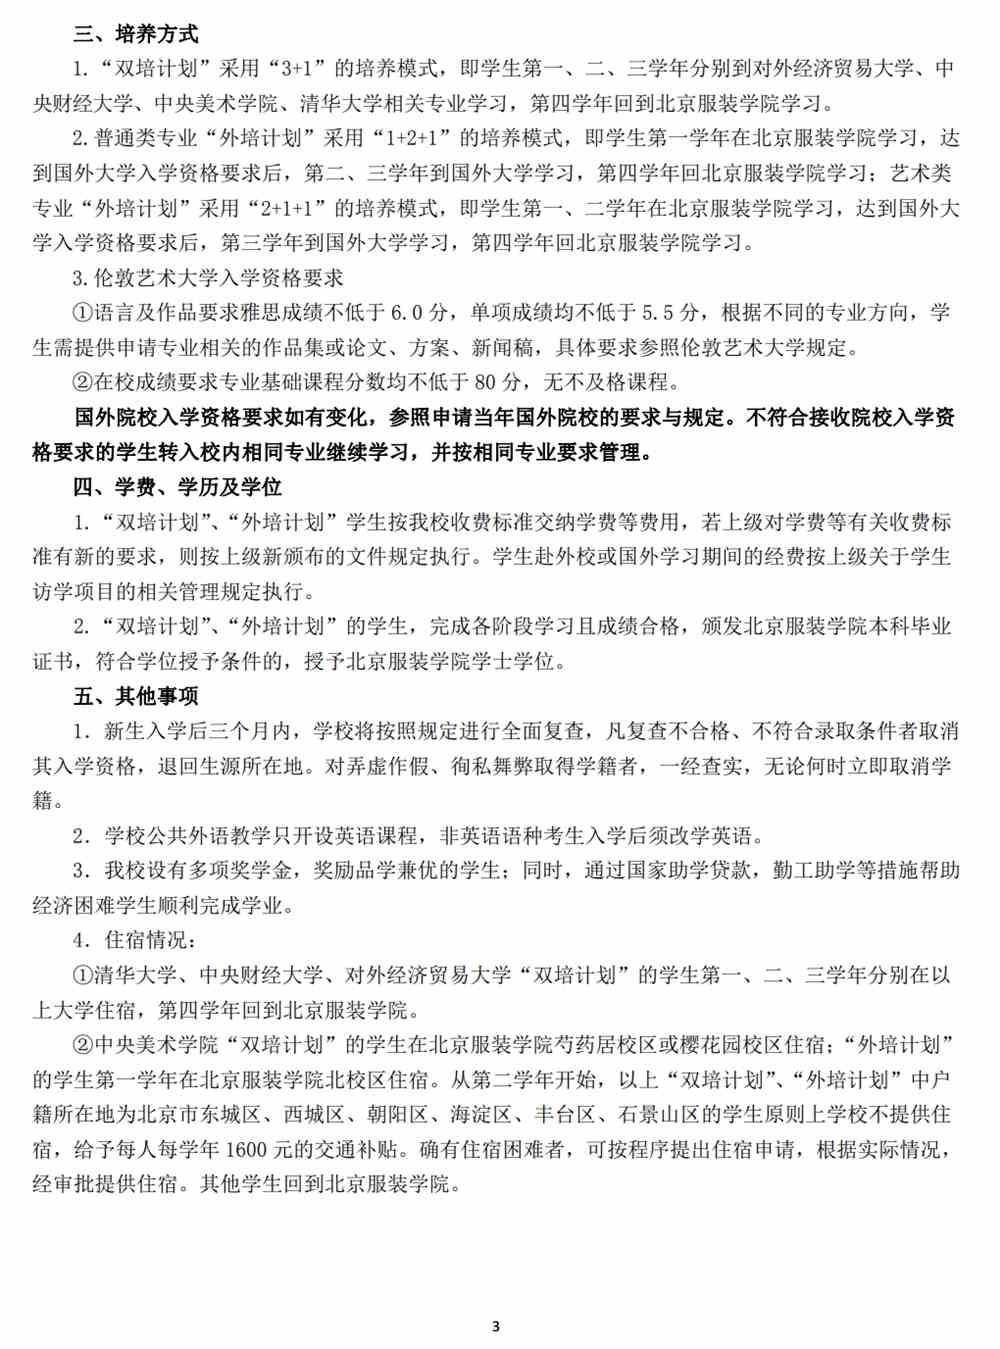 北京服装学院面向北京市招收双培外培计划招生简章发布